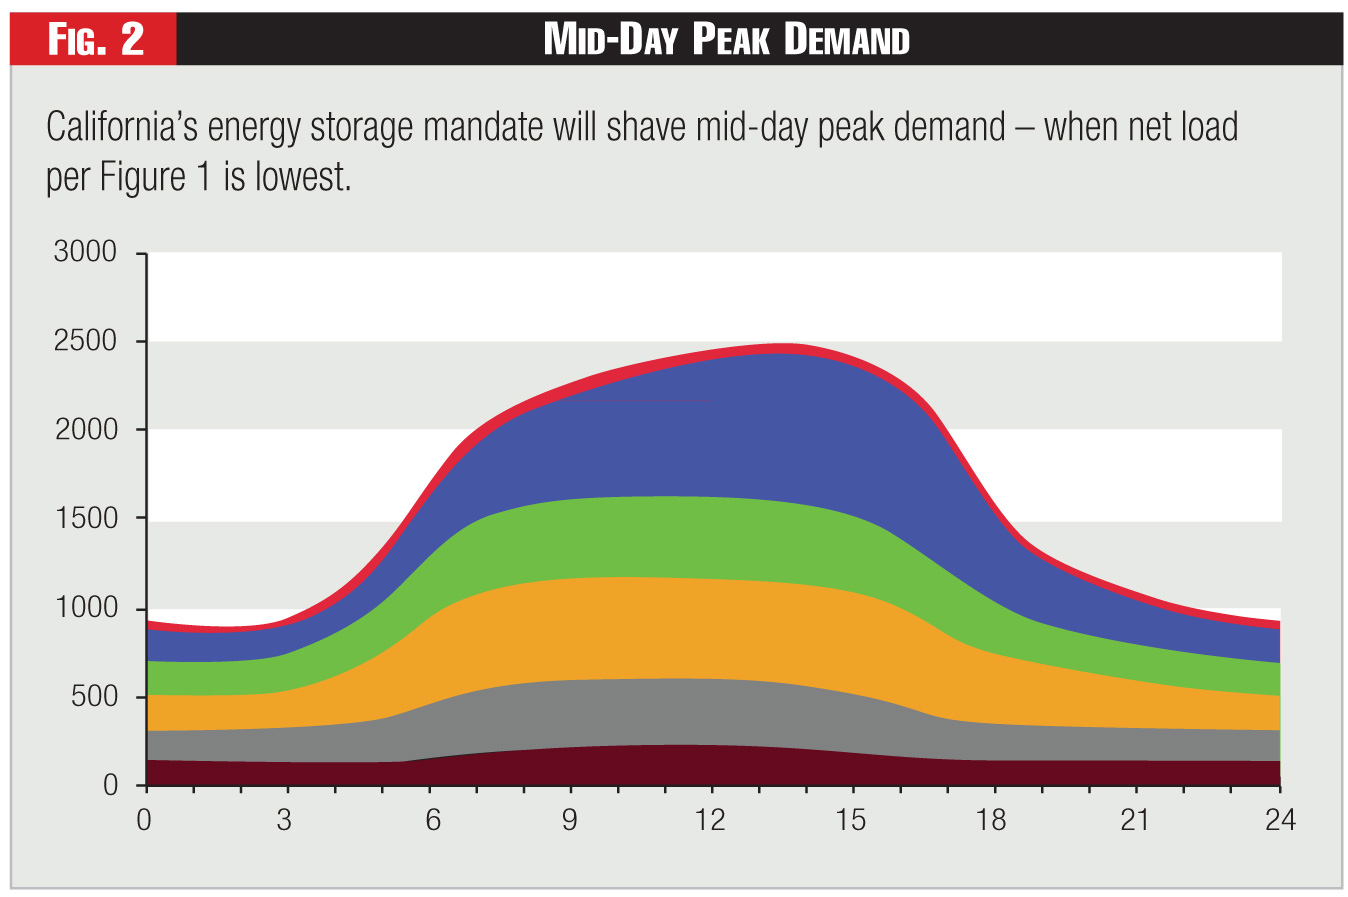 Figure 2 - Mid-Day Peak Demand